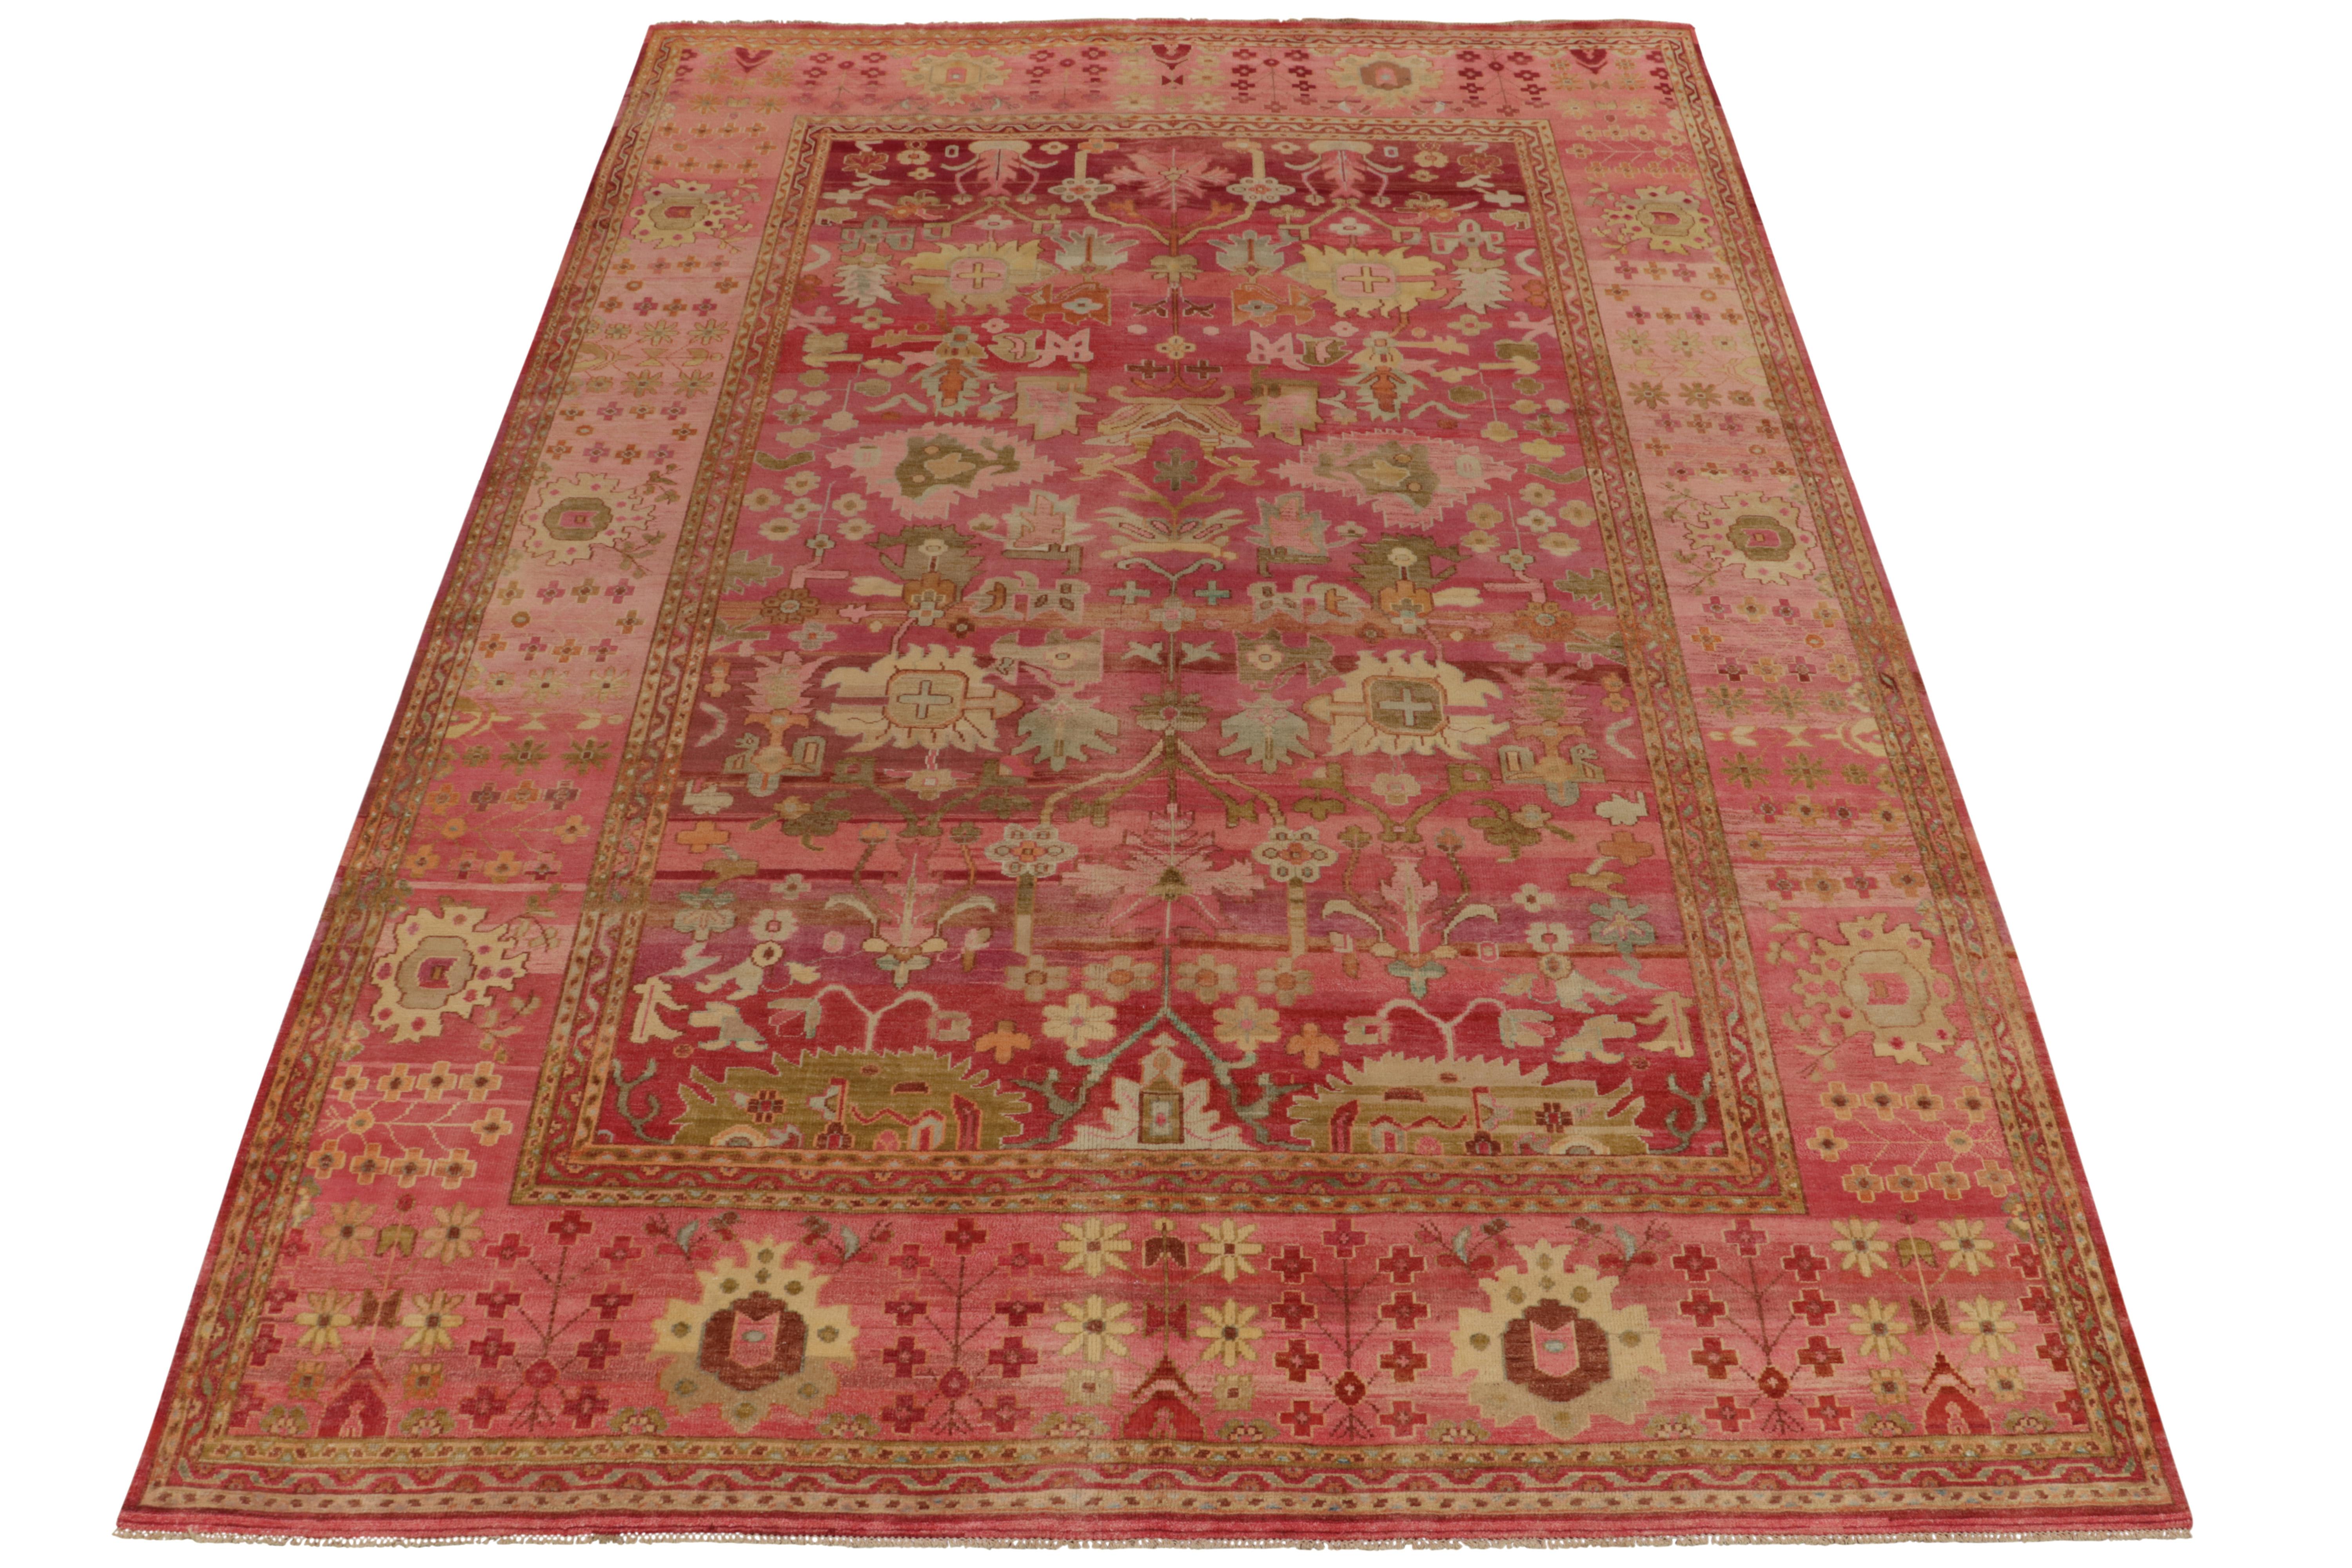 Der aus luxuriöser Seide gefertigte Teppich im Format 10x14 ist von einem klassischen Teppich inspiriert, der in einem kühnen modernen polychromen Stil neu interpretiert wurde. Die Schönheit der Skala manifestiert sich in einem floralen Muster, das